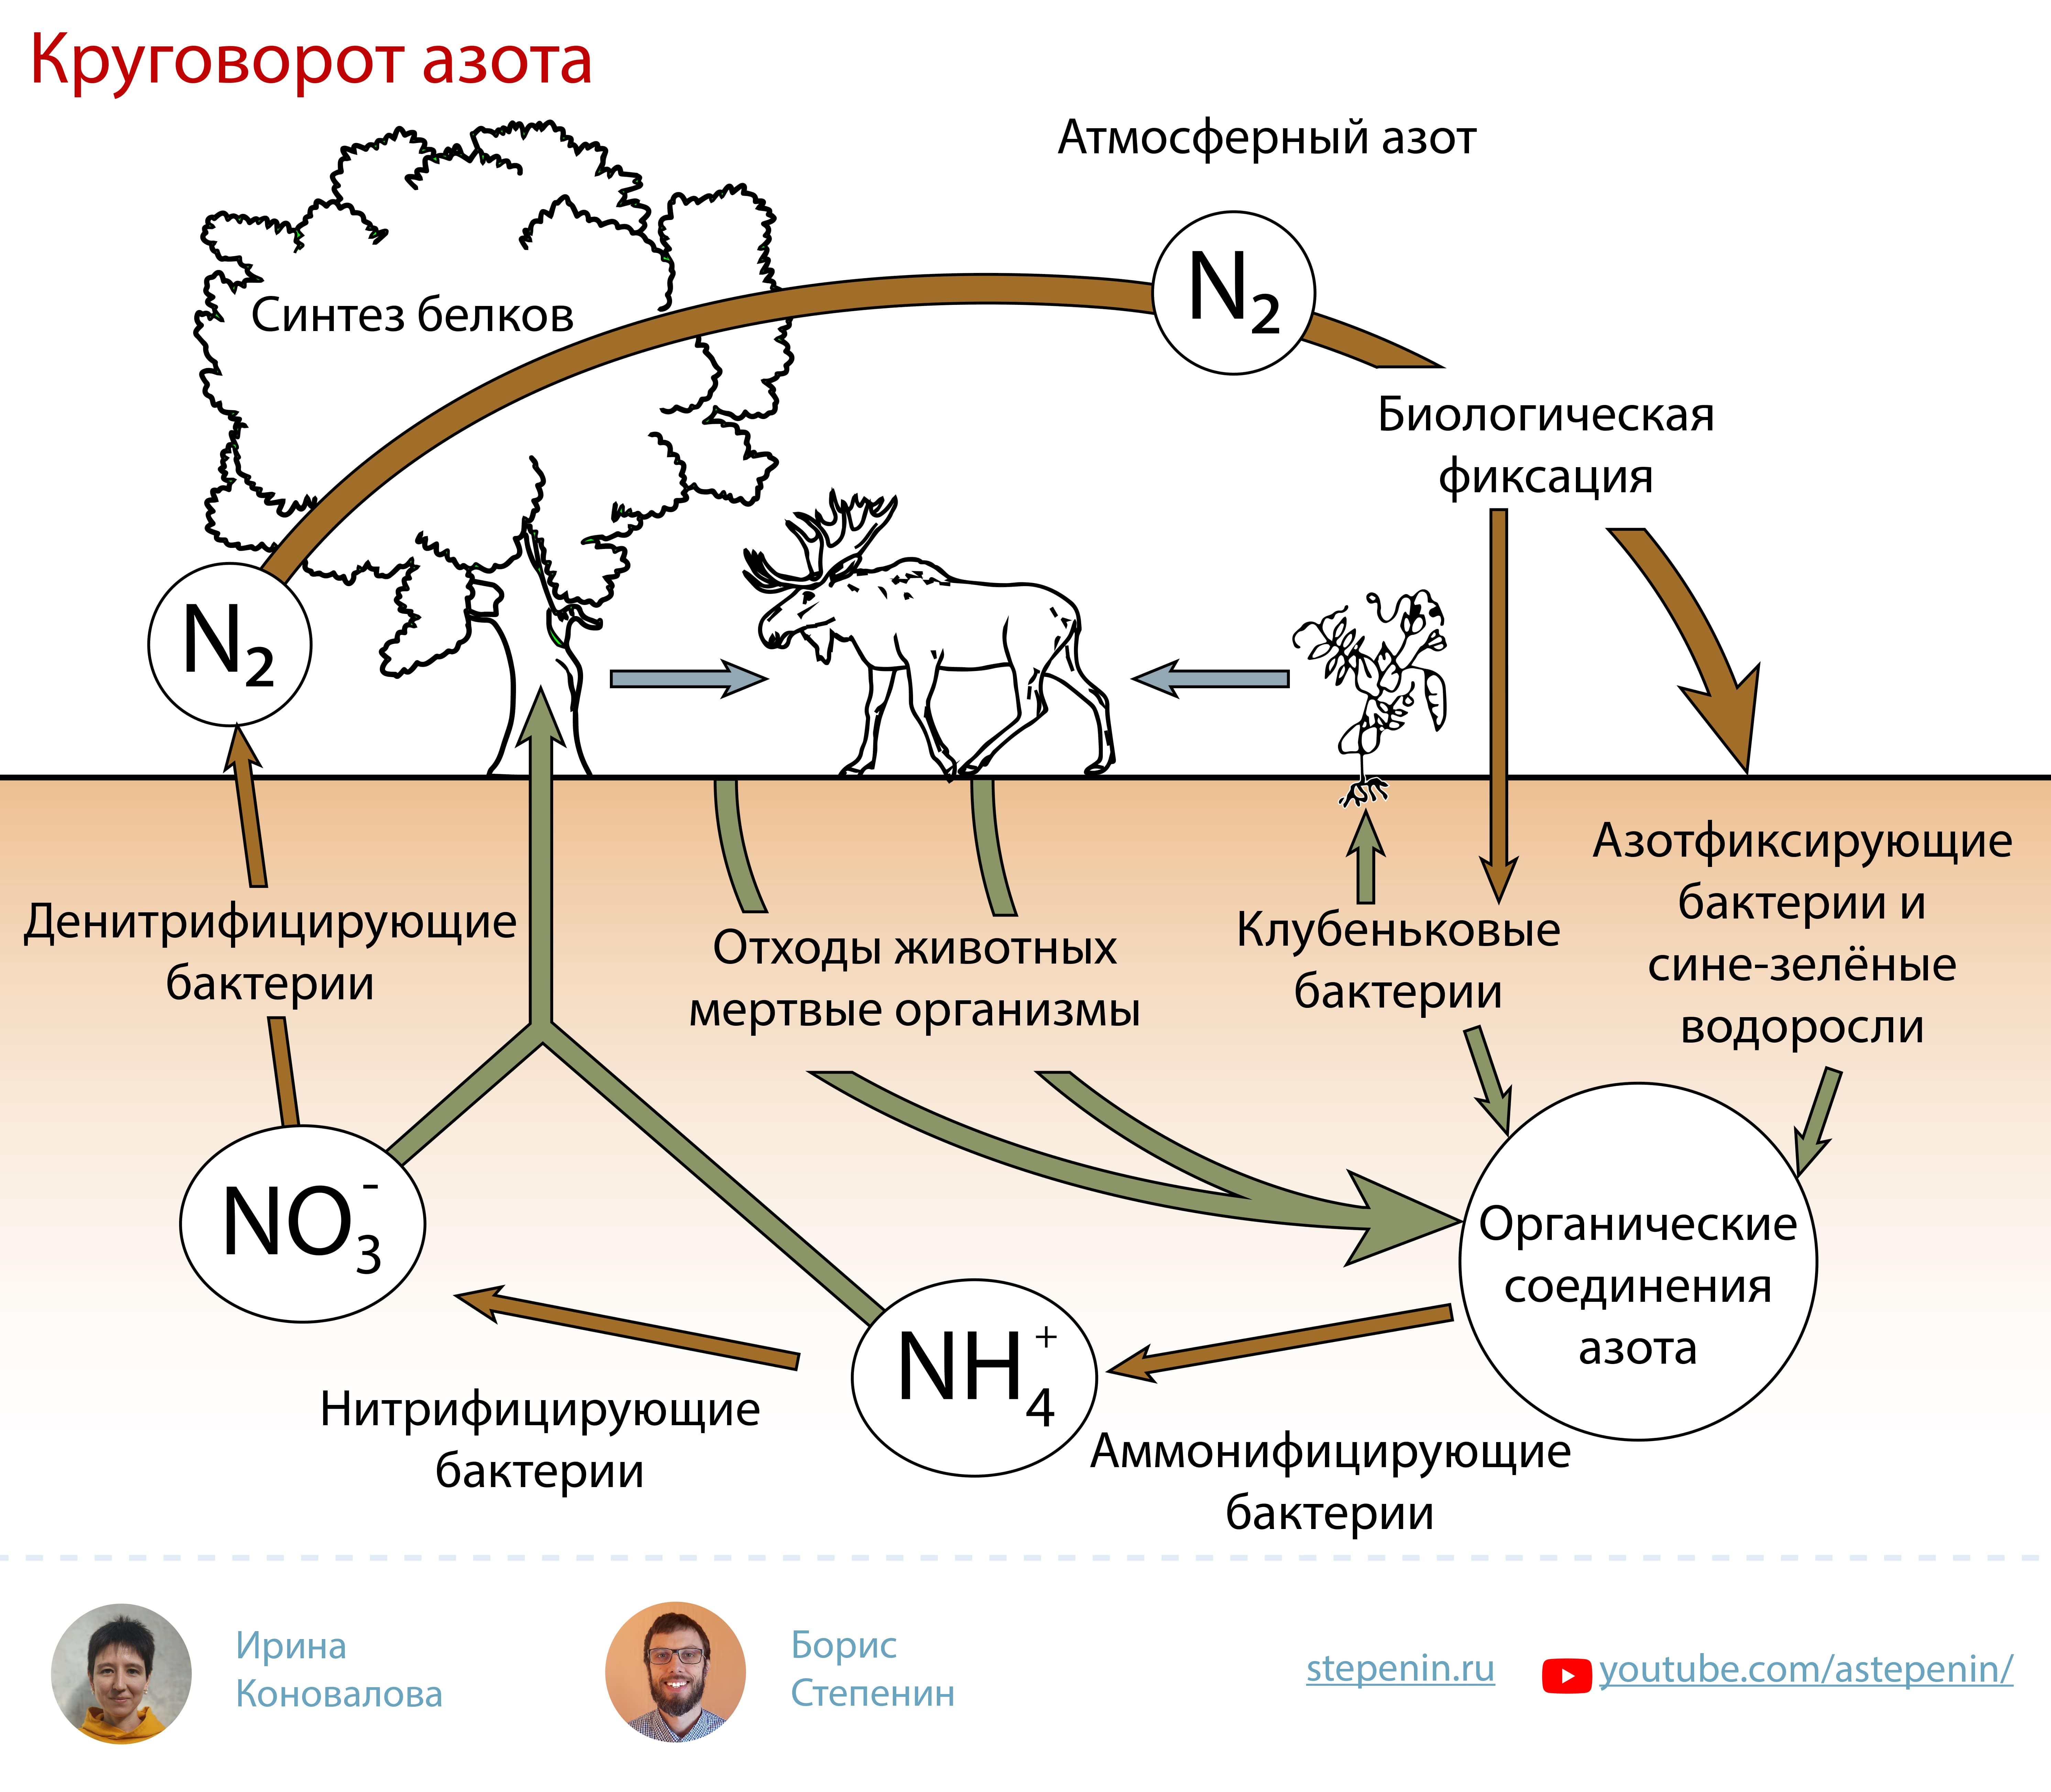 Живые организмы осуществляют круговорот. Биогеохимический цикл азота схема. Биологическая роль азота круговорот. Атмосферный азот круговорот веществ. Круговороттазота в природе.